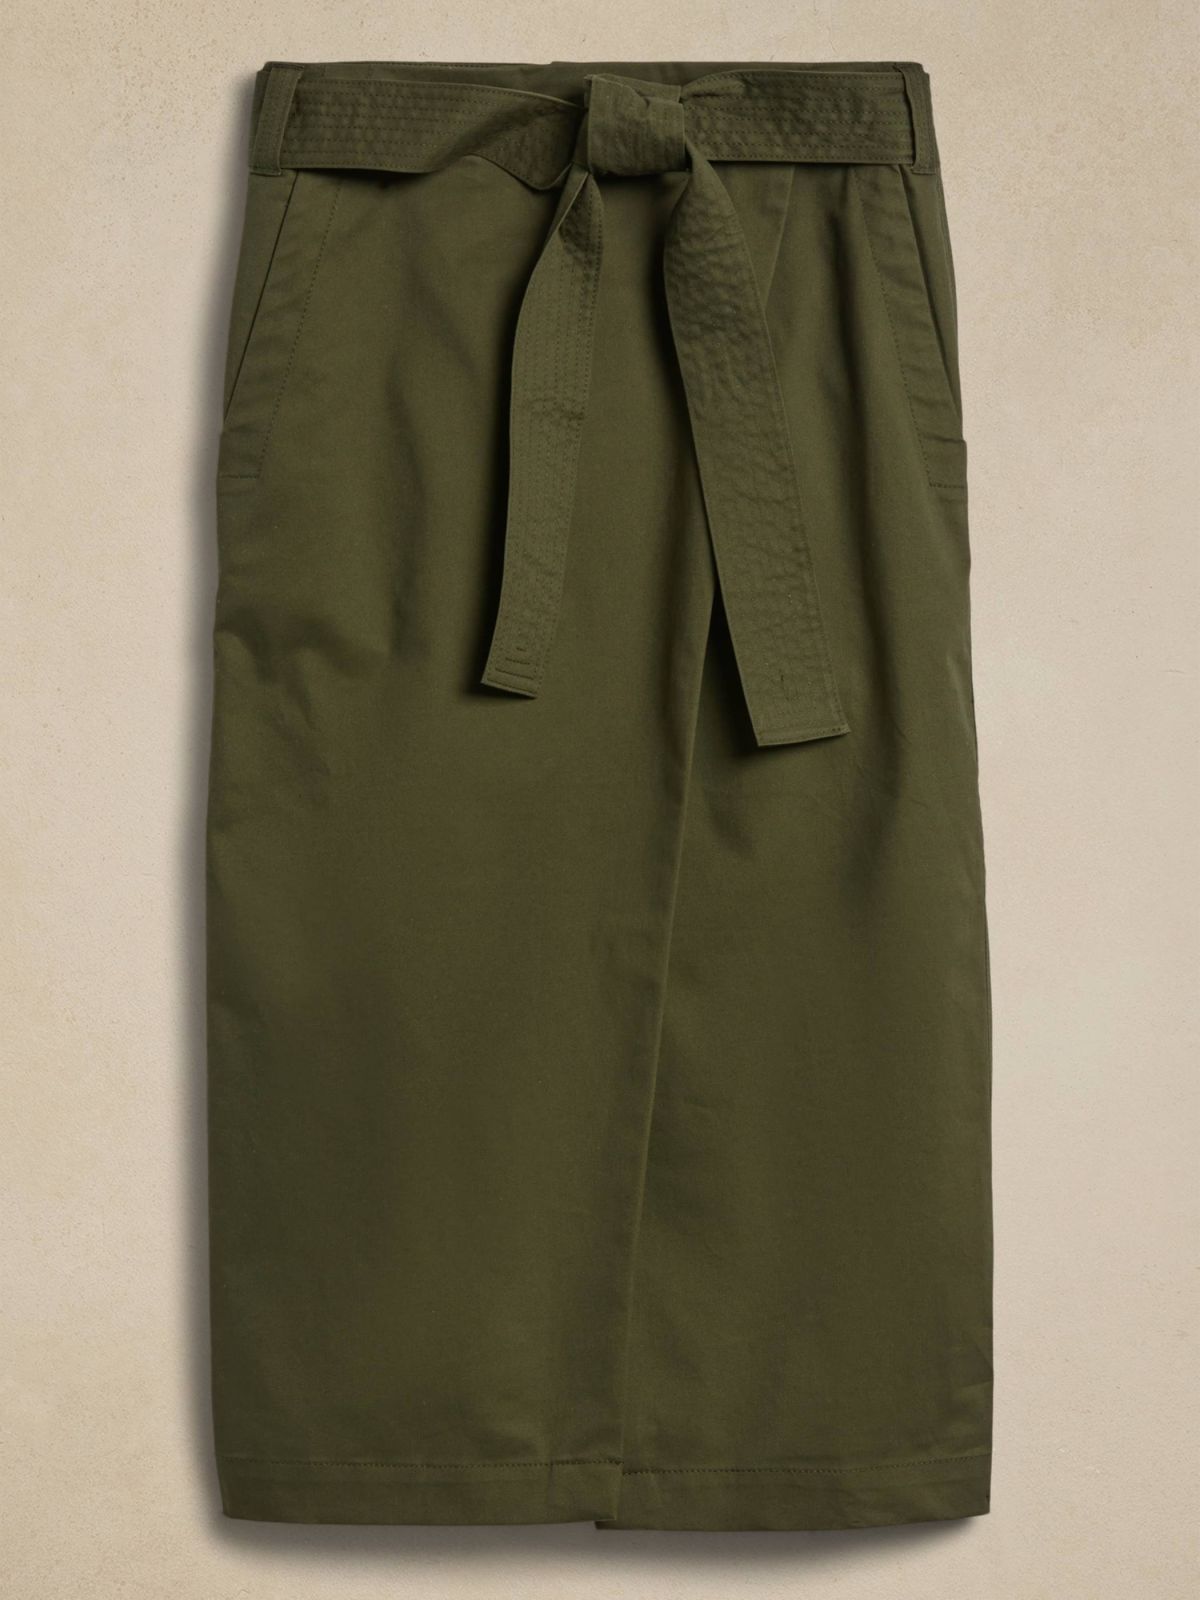  חצאית מידי מעטפת של BANANA REPUBLIC